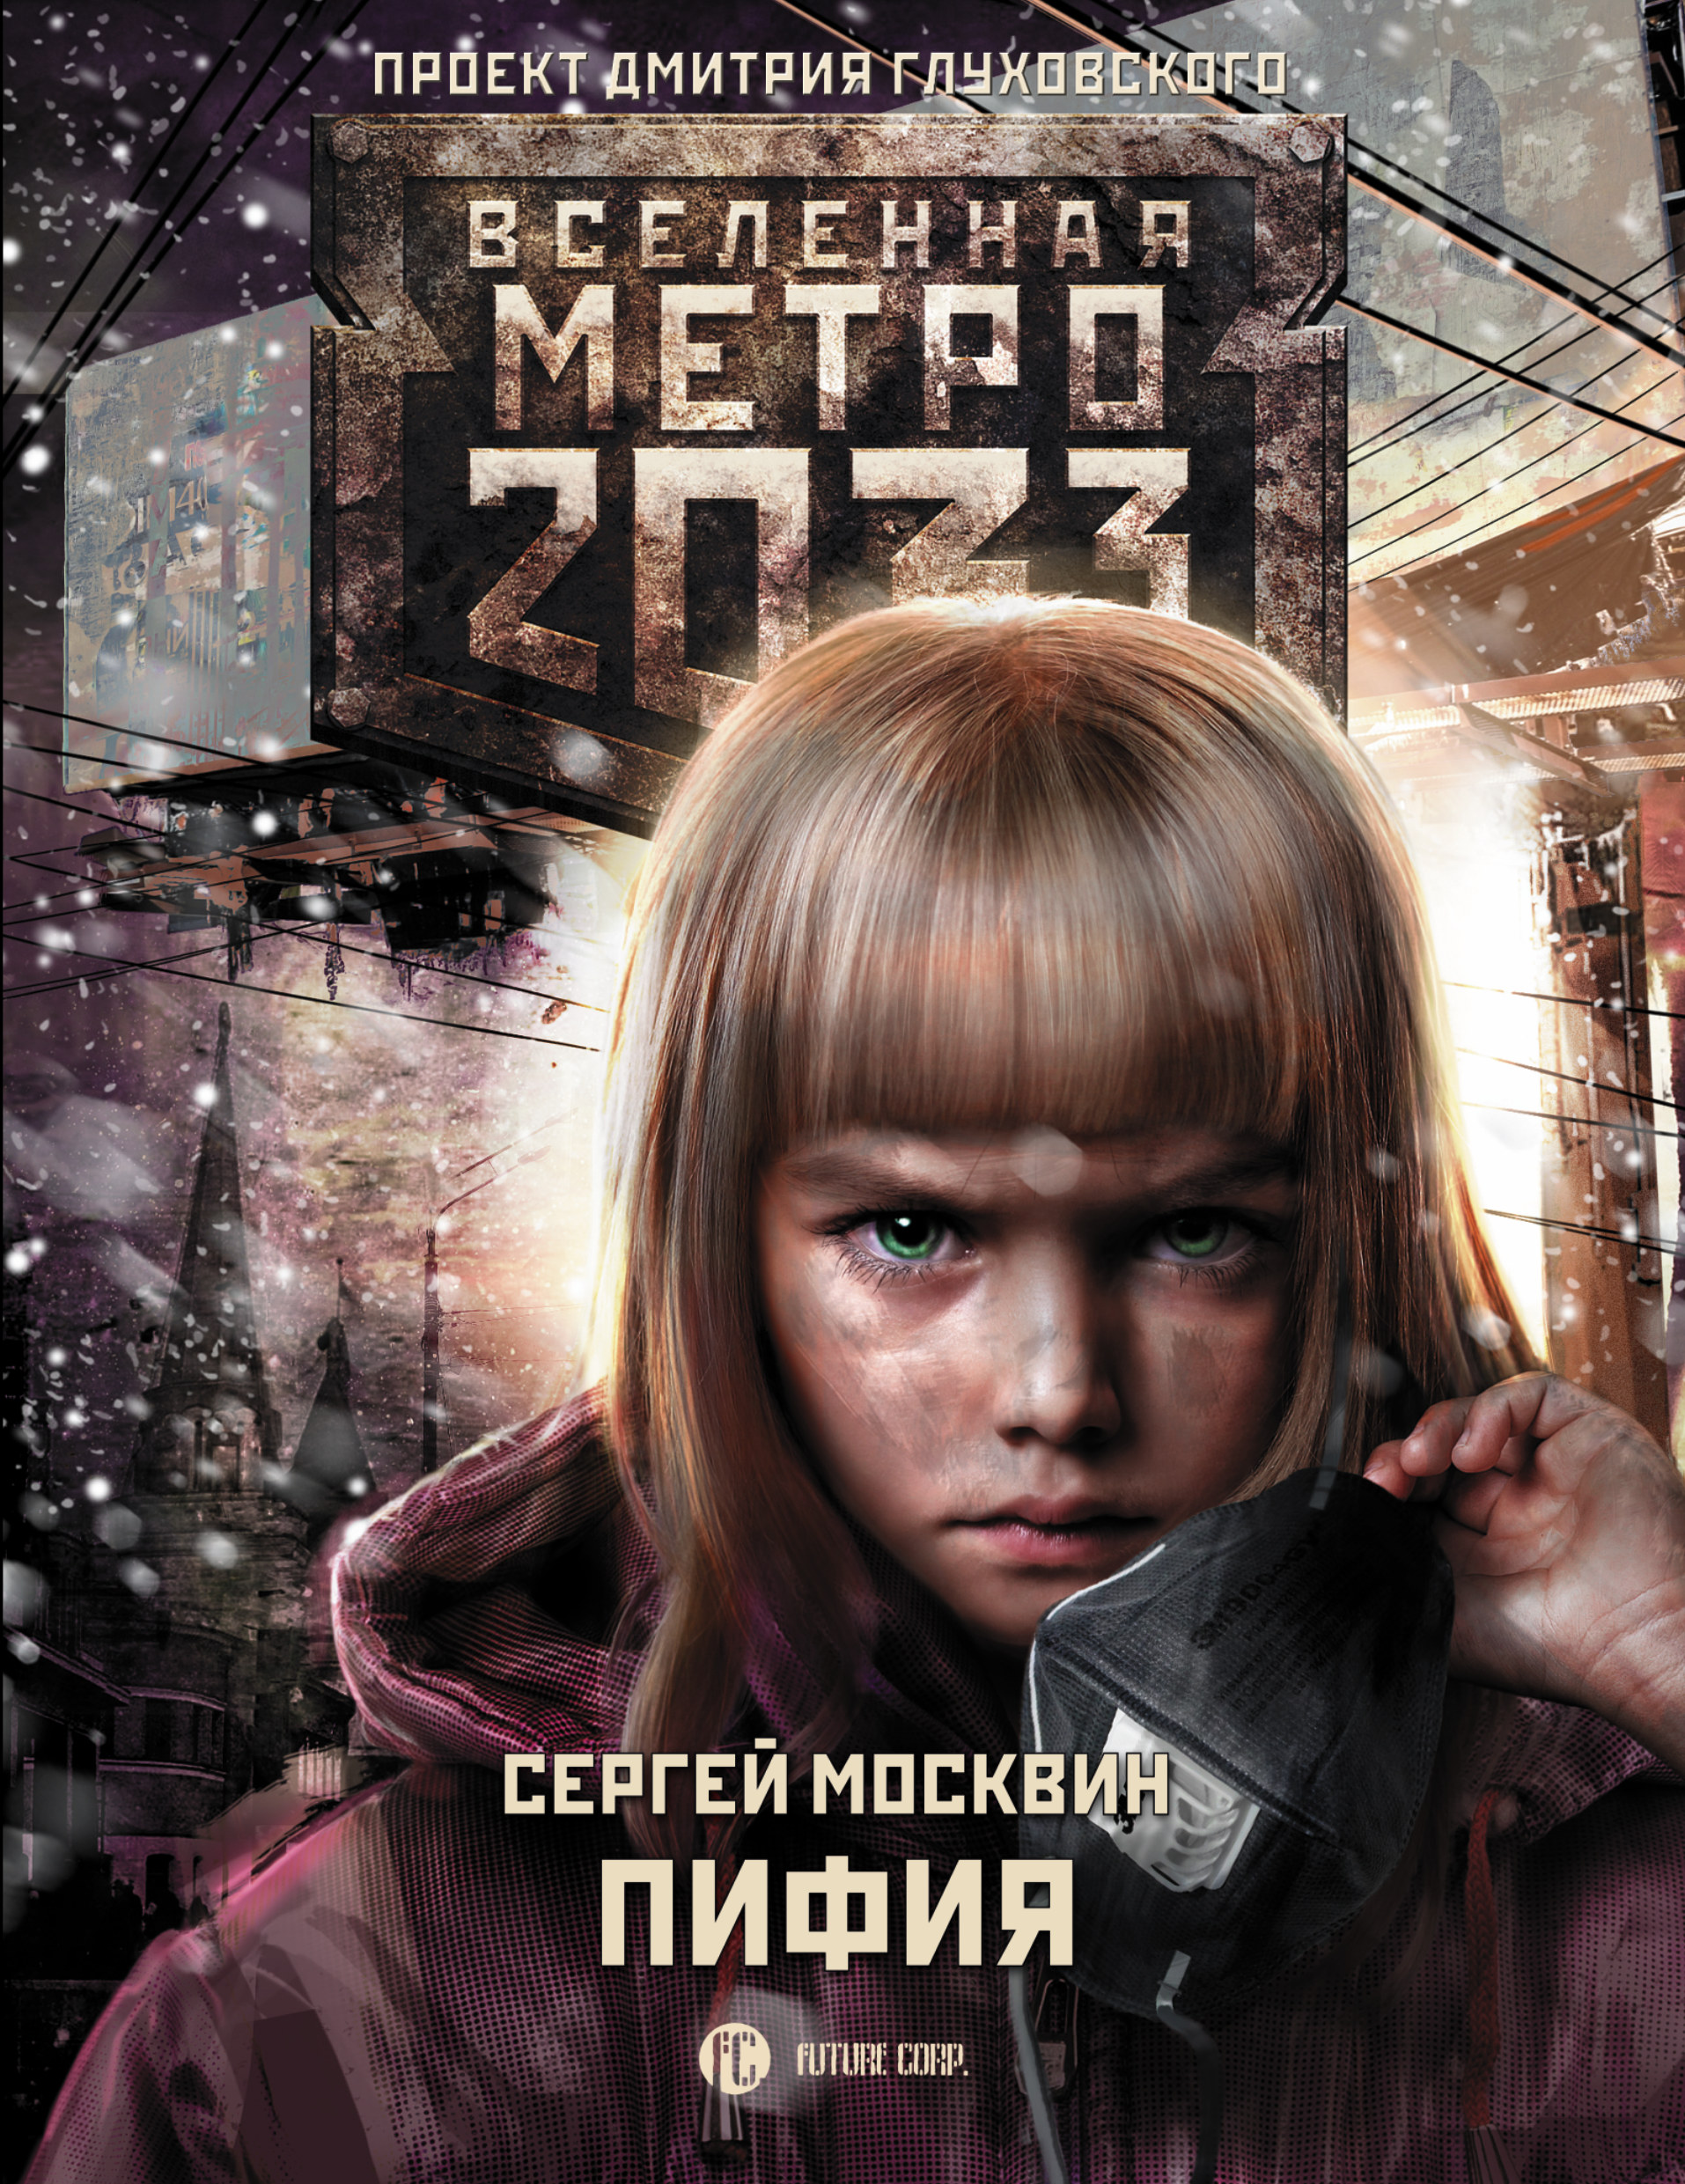 metro 2033 audio book